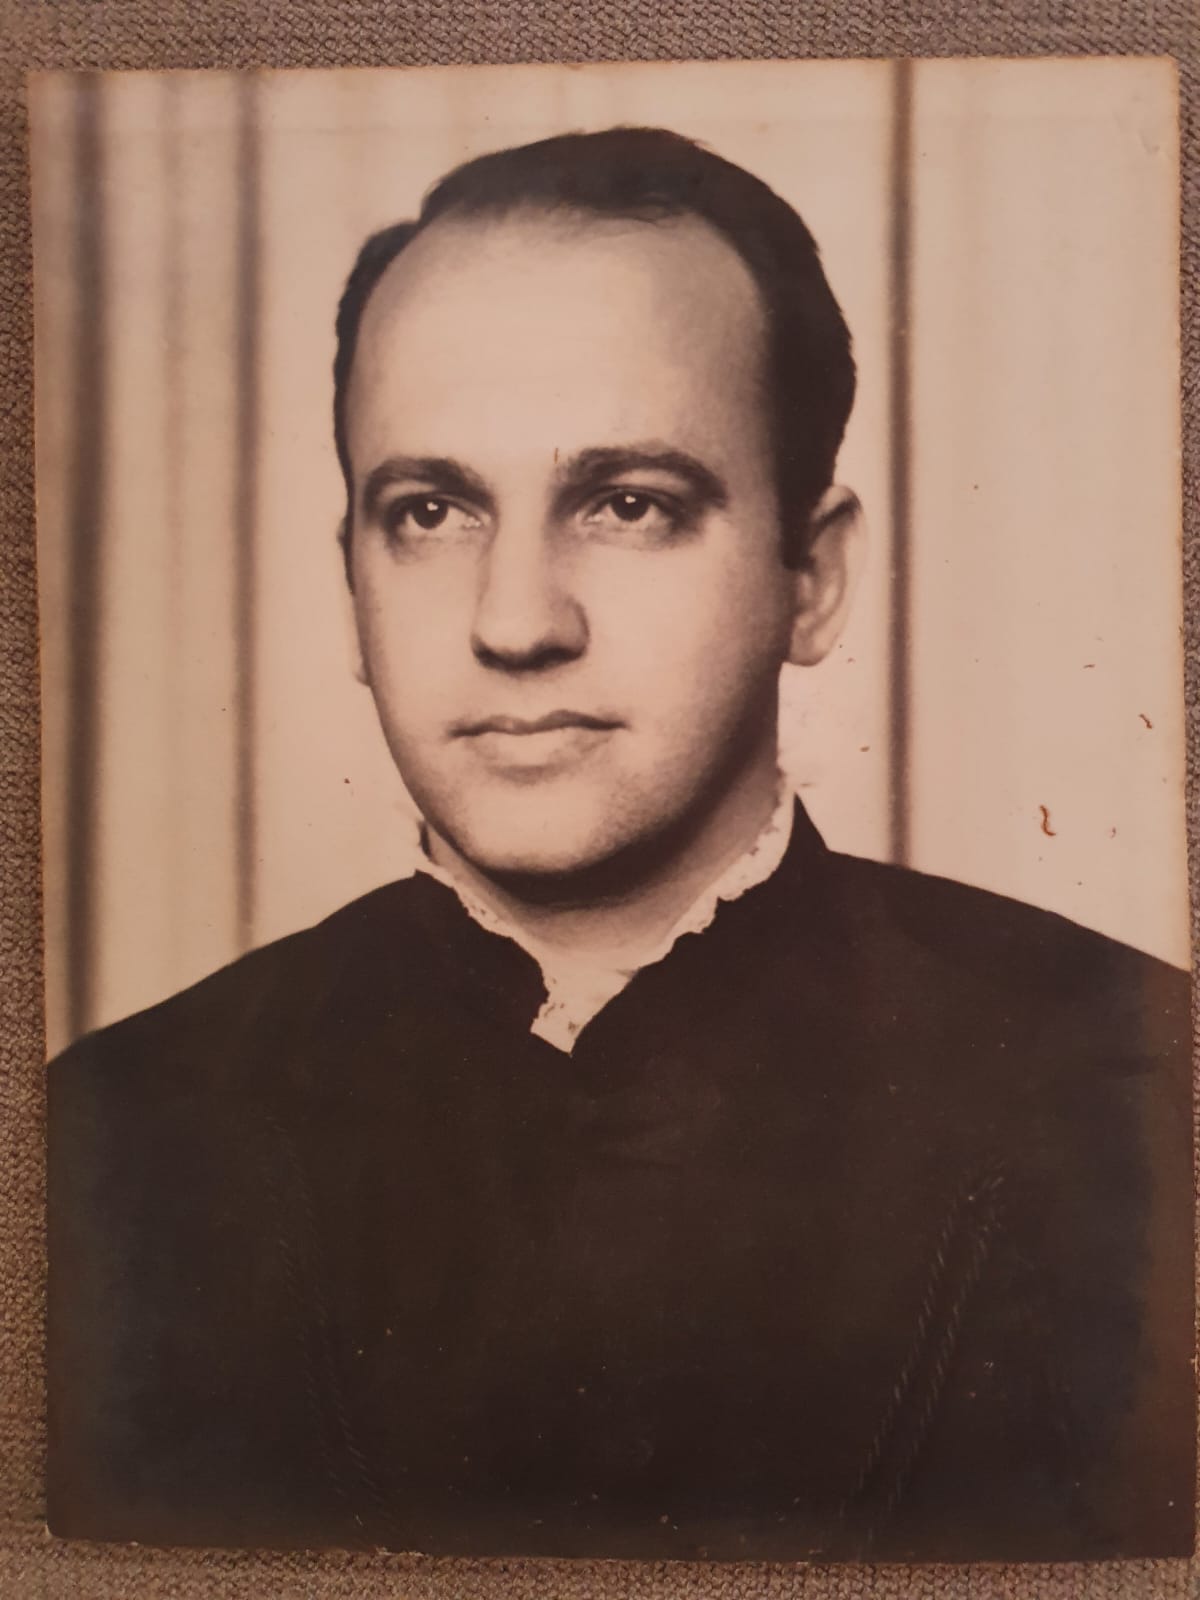 José Roberto Del Carlo